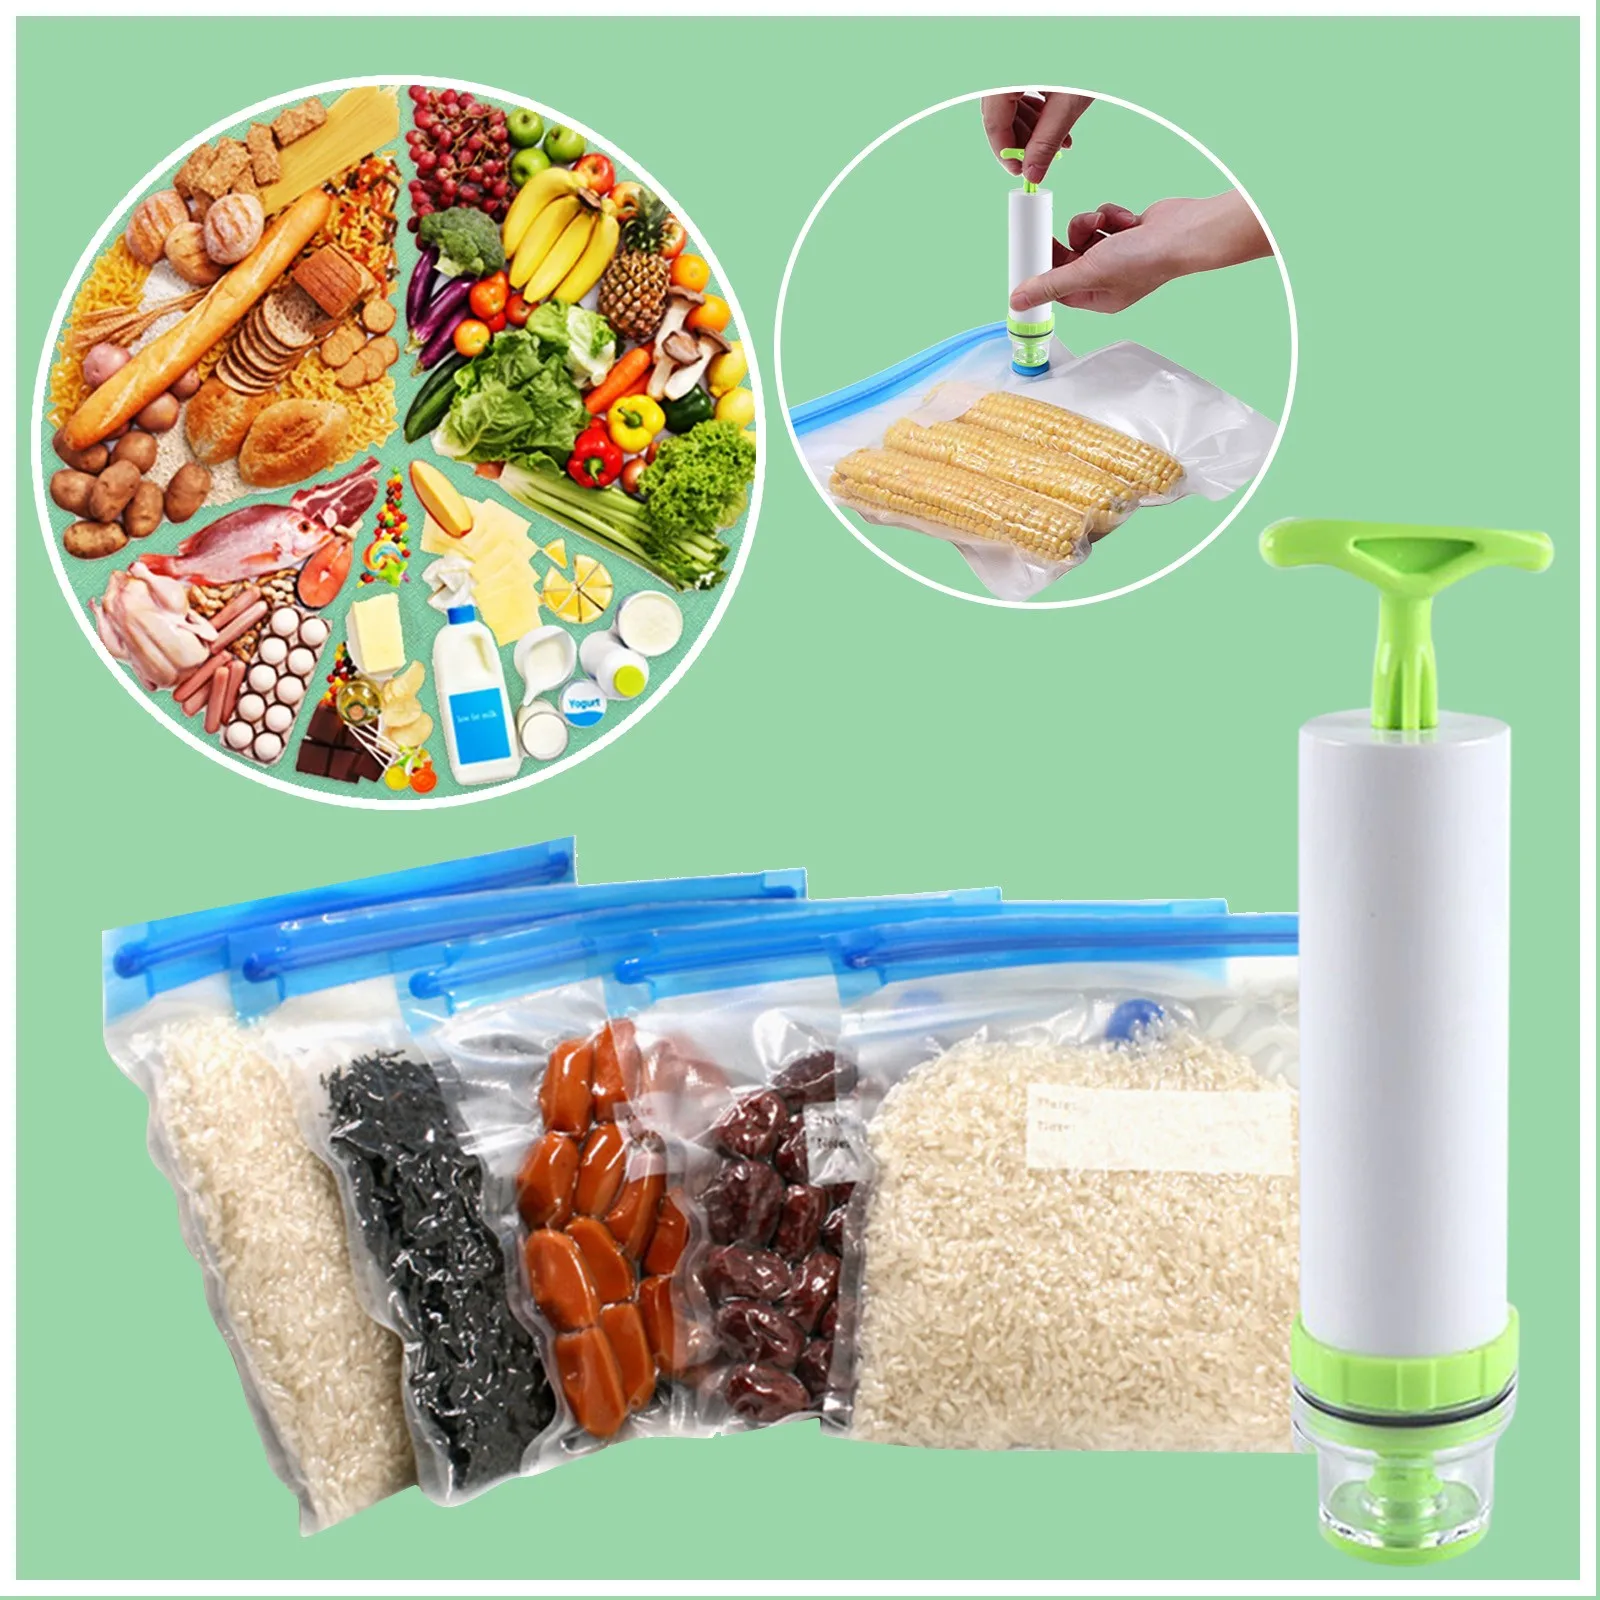 https://ae01.alicdn.com/kf/Hd9cc08b421594d9c9a7d57bef593d6d3J/Vacuum-Sealer-Bags-Reusable-Food-Grade-Grain-Air-Vacuum-Compression-Fresh-Keeping-Bag-Filterable-Vacuum-Hand.jpg